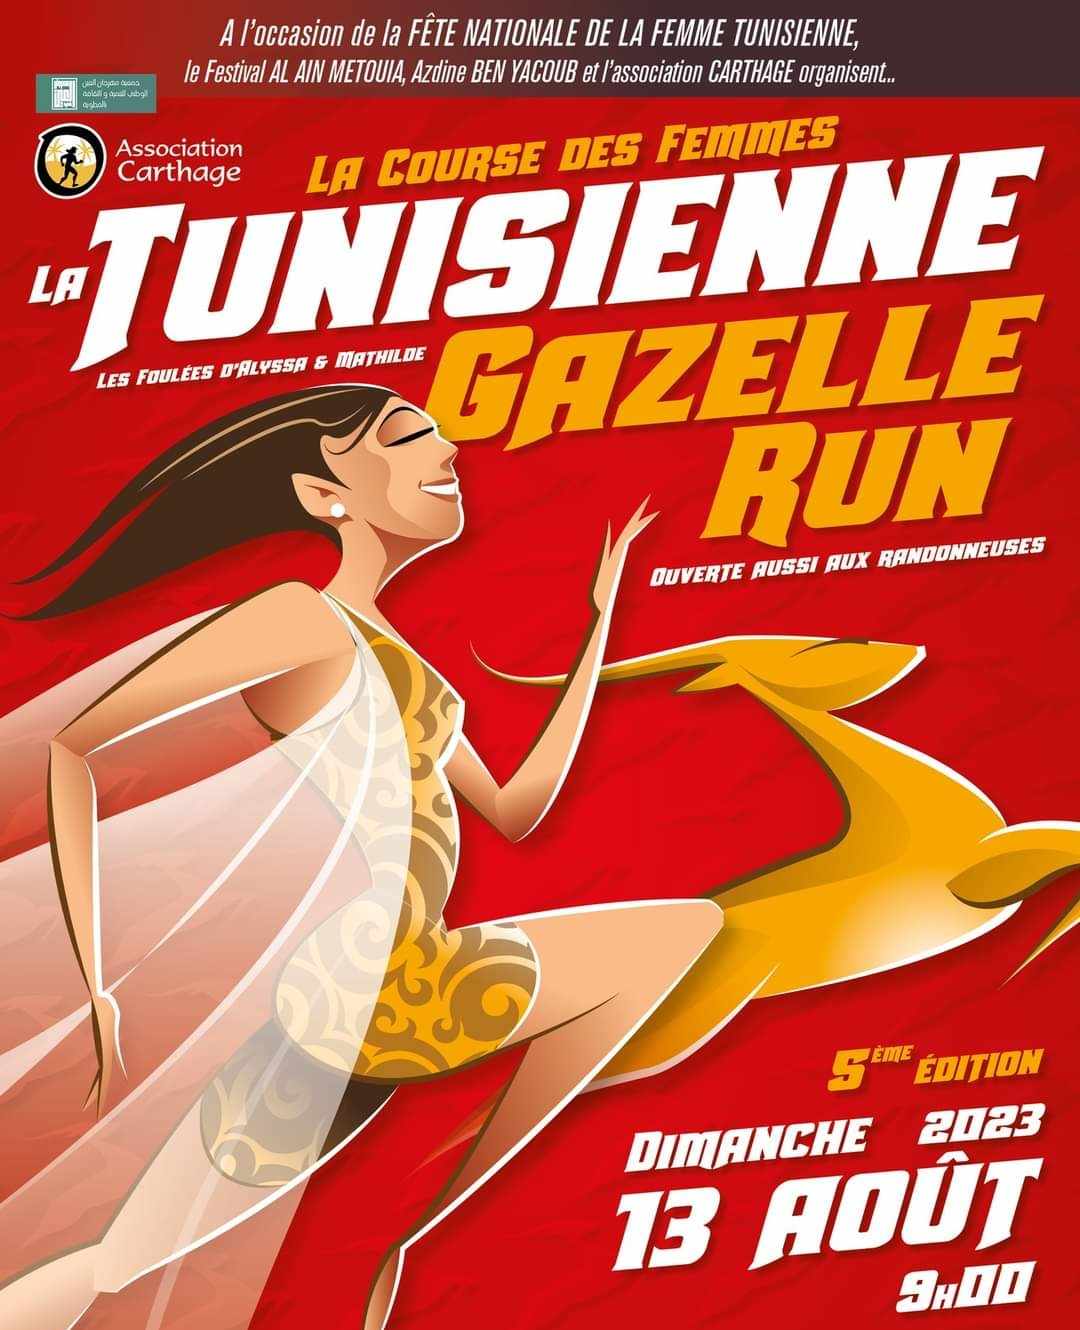  احتفالا  باليوم الوطني للمرأة: غدا الماراطون النسائي  la Tunisienne gazelle run بالمطوية